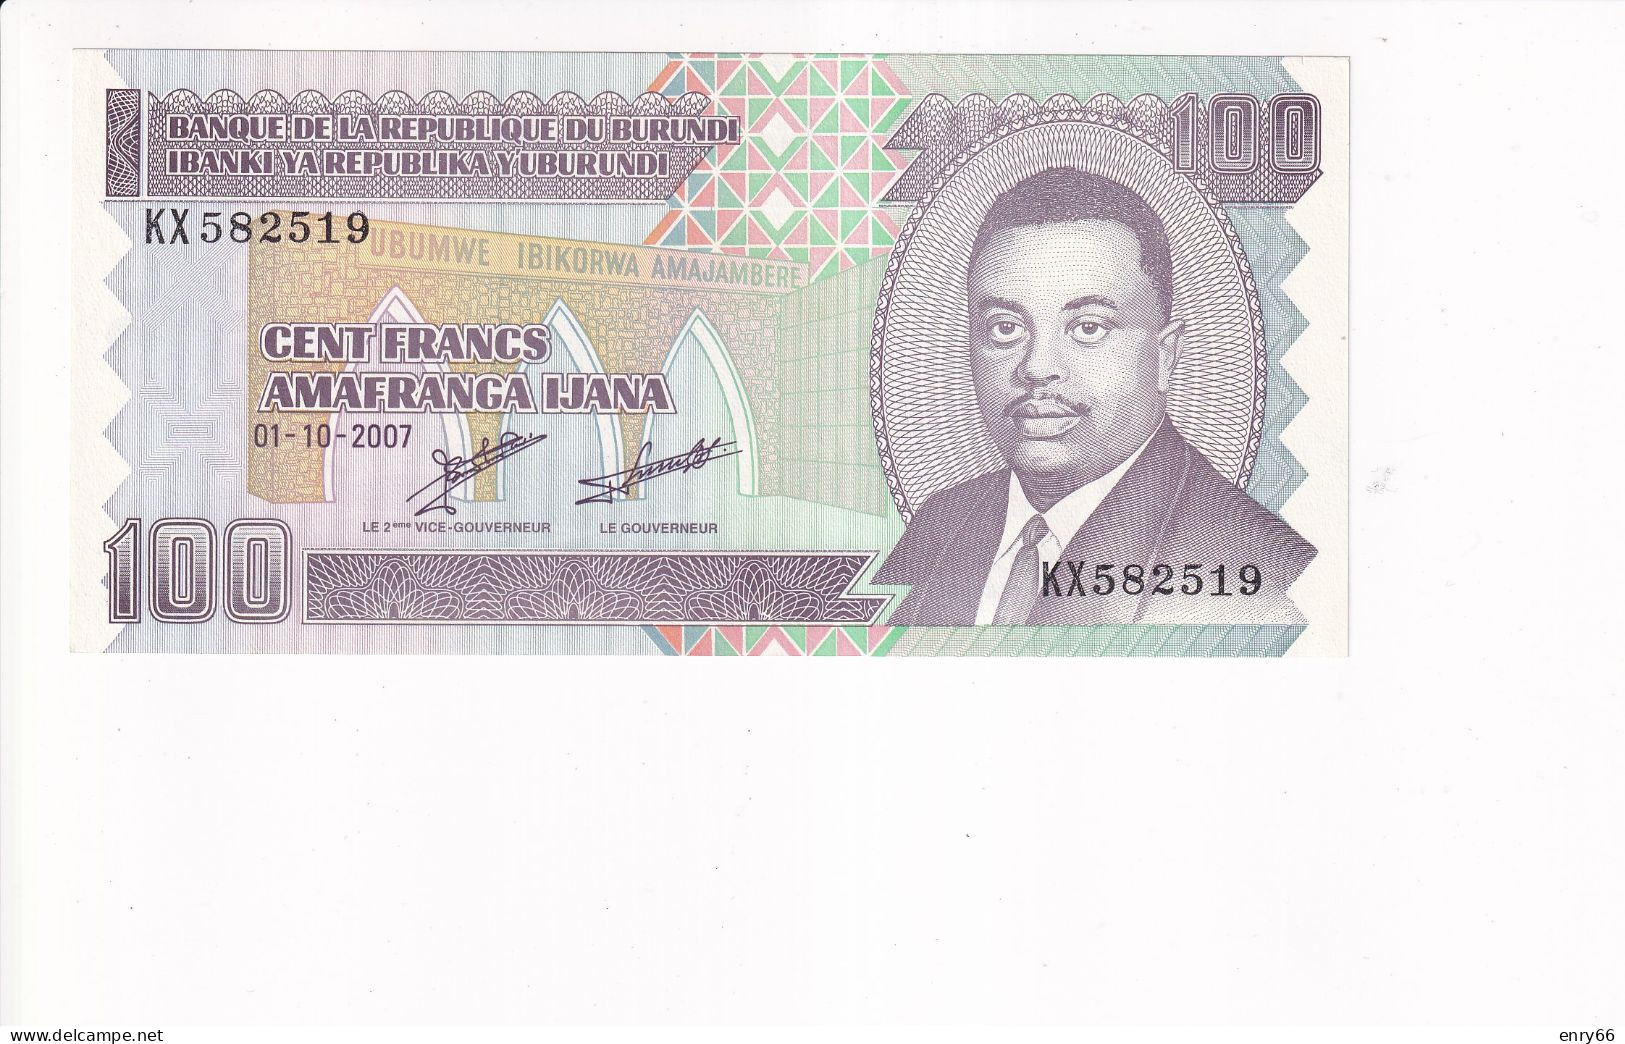 BURUNDI 100 FRANCS 2007 P37F UNC - Burundi